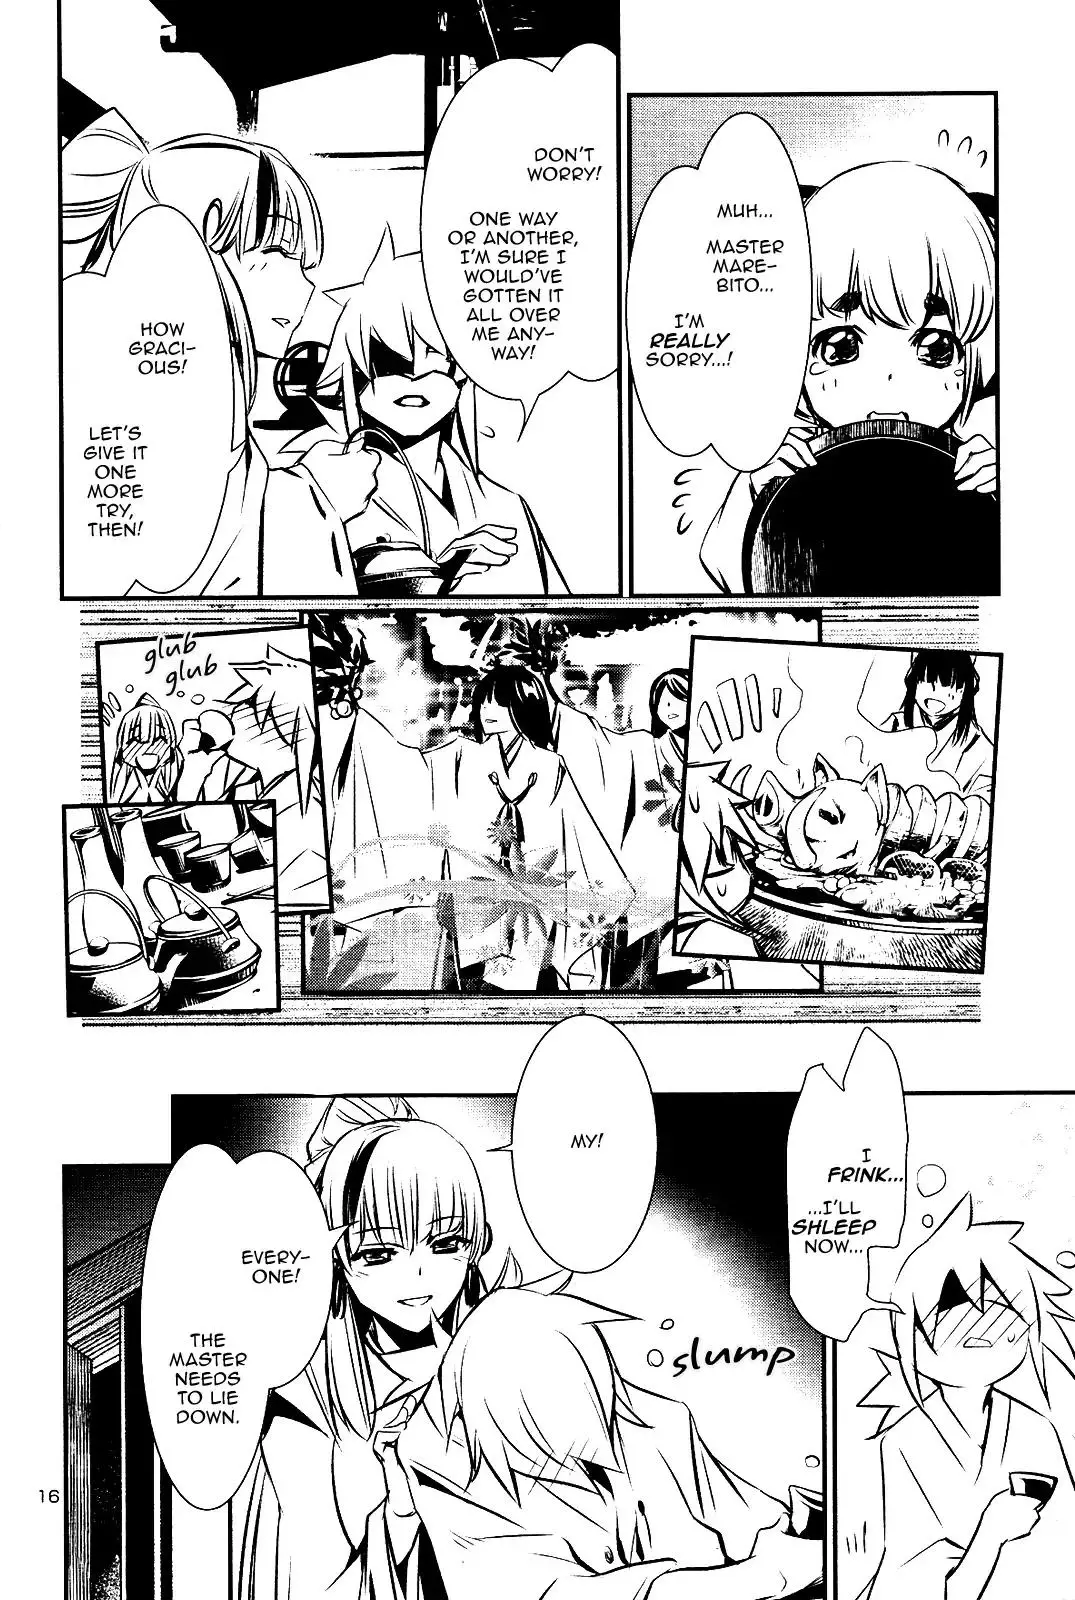 Shinju no Nectar - 25 page 14